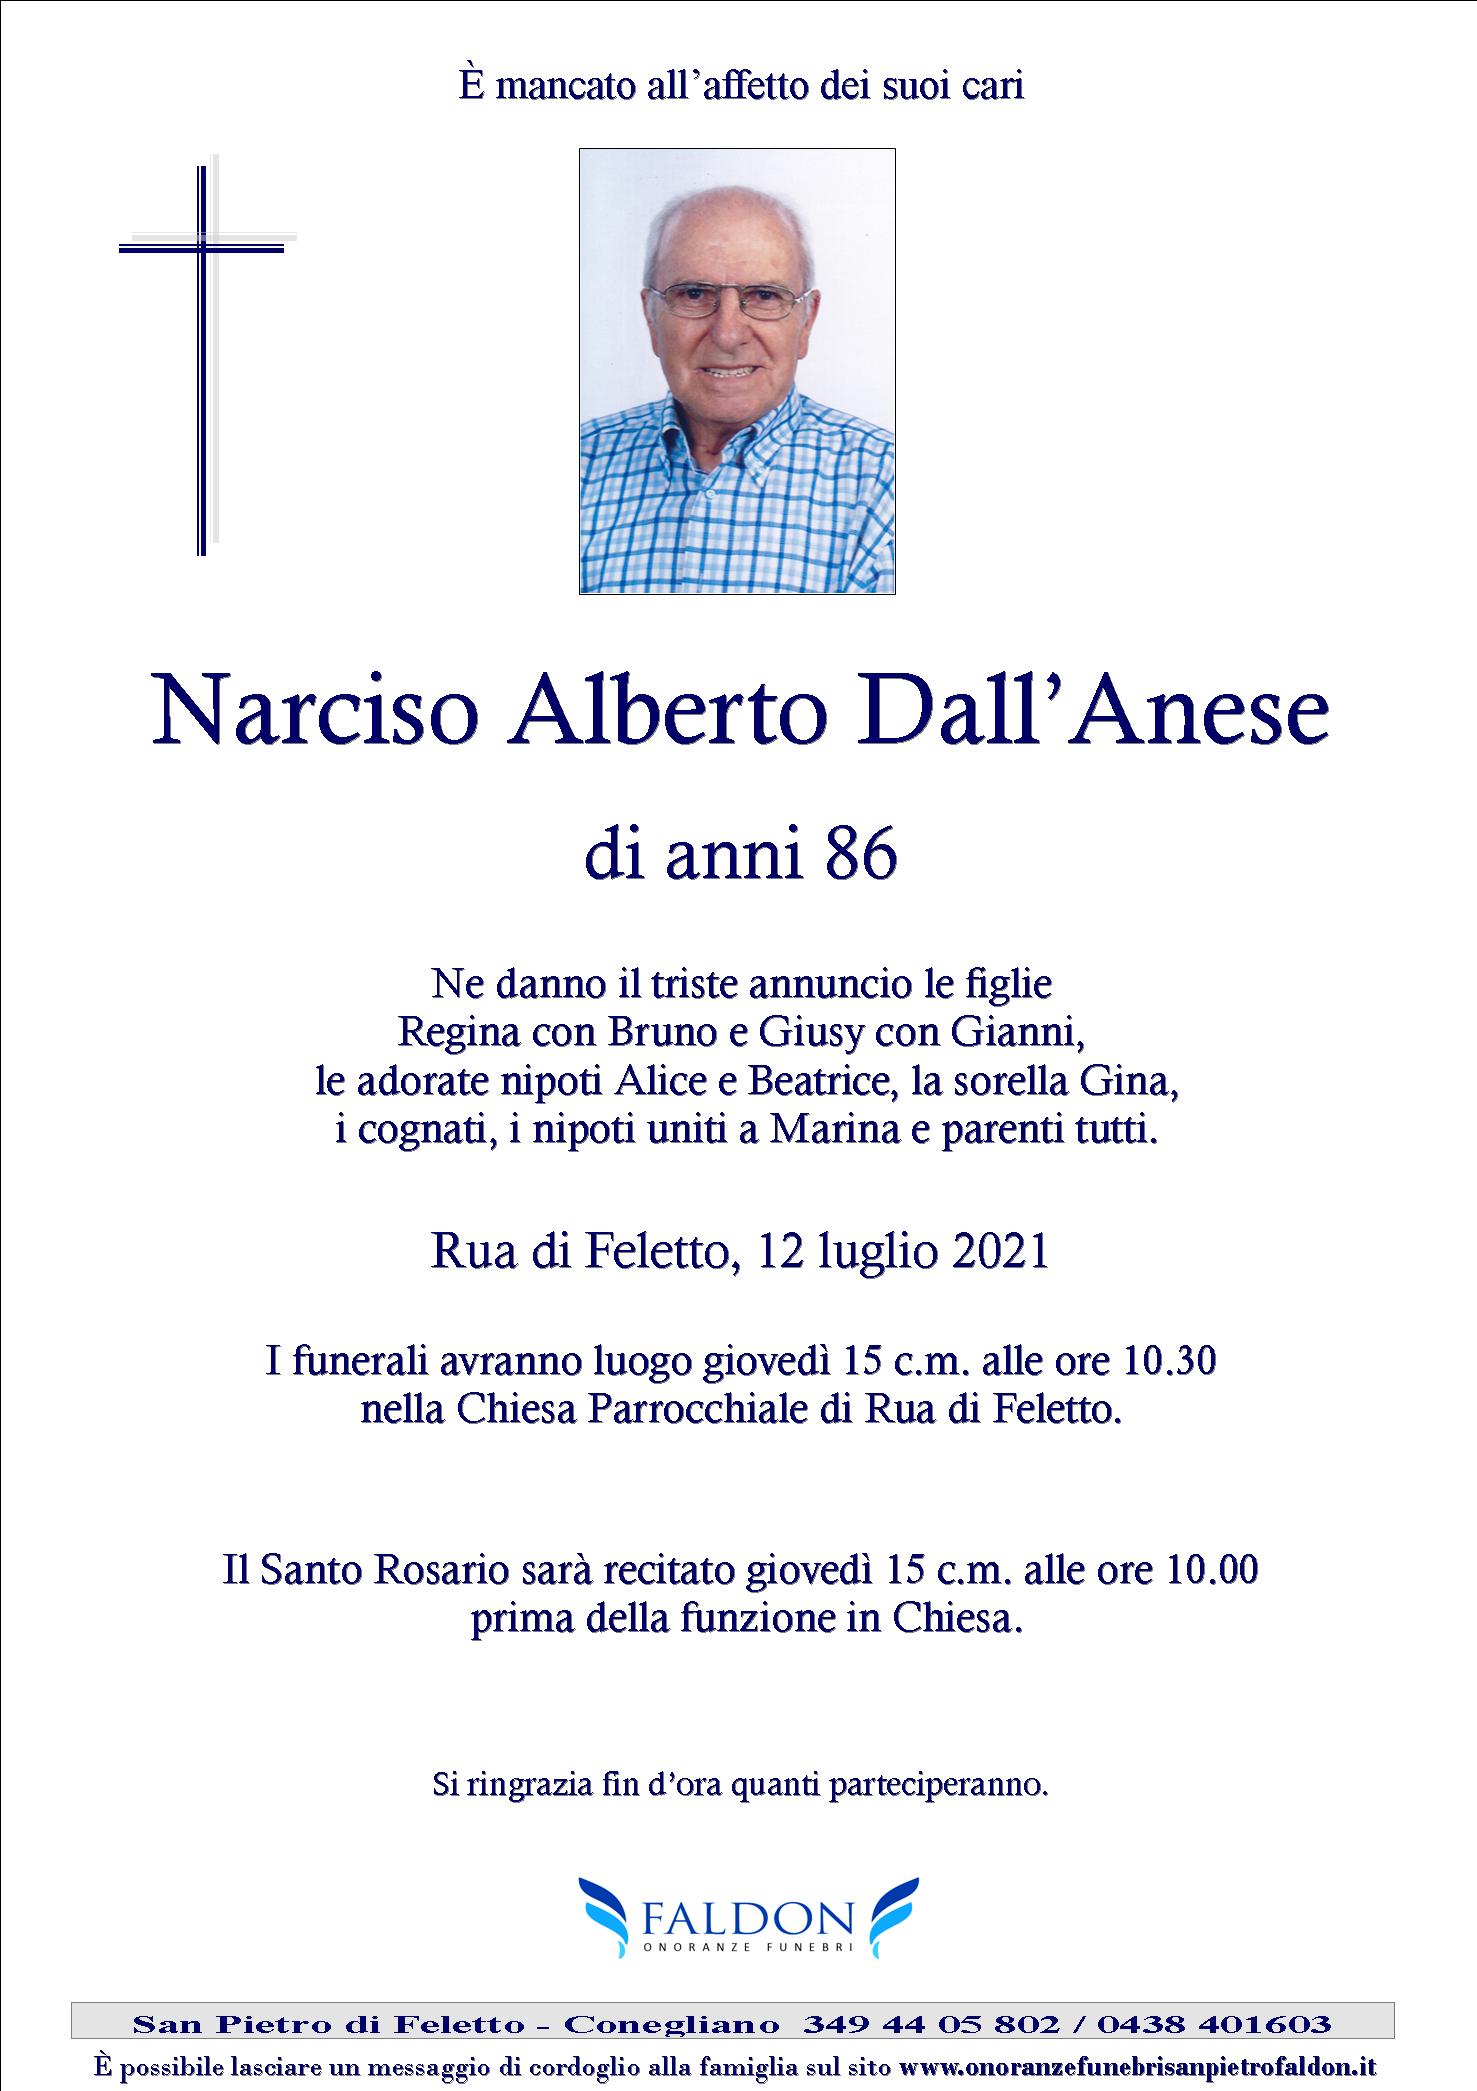 Narciso Alberto Dall’Anese